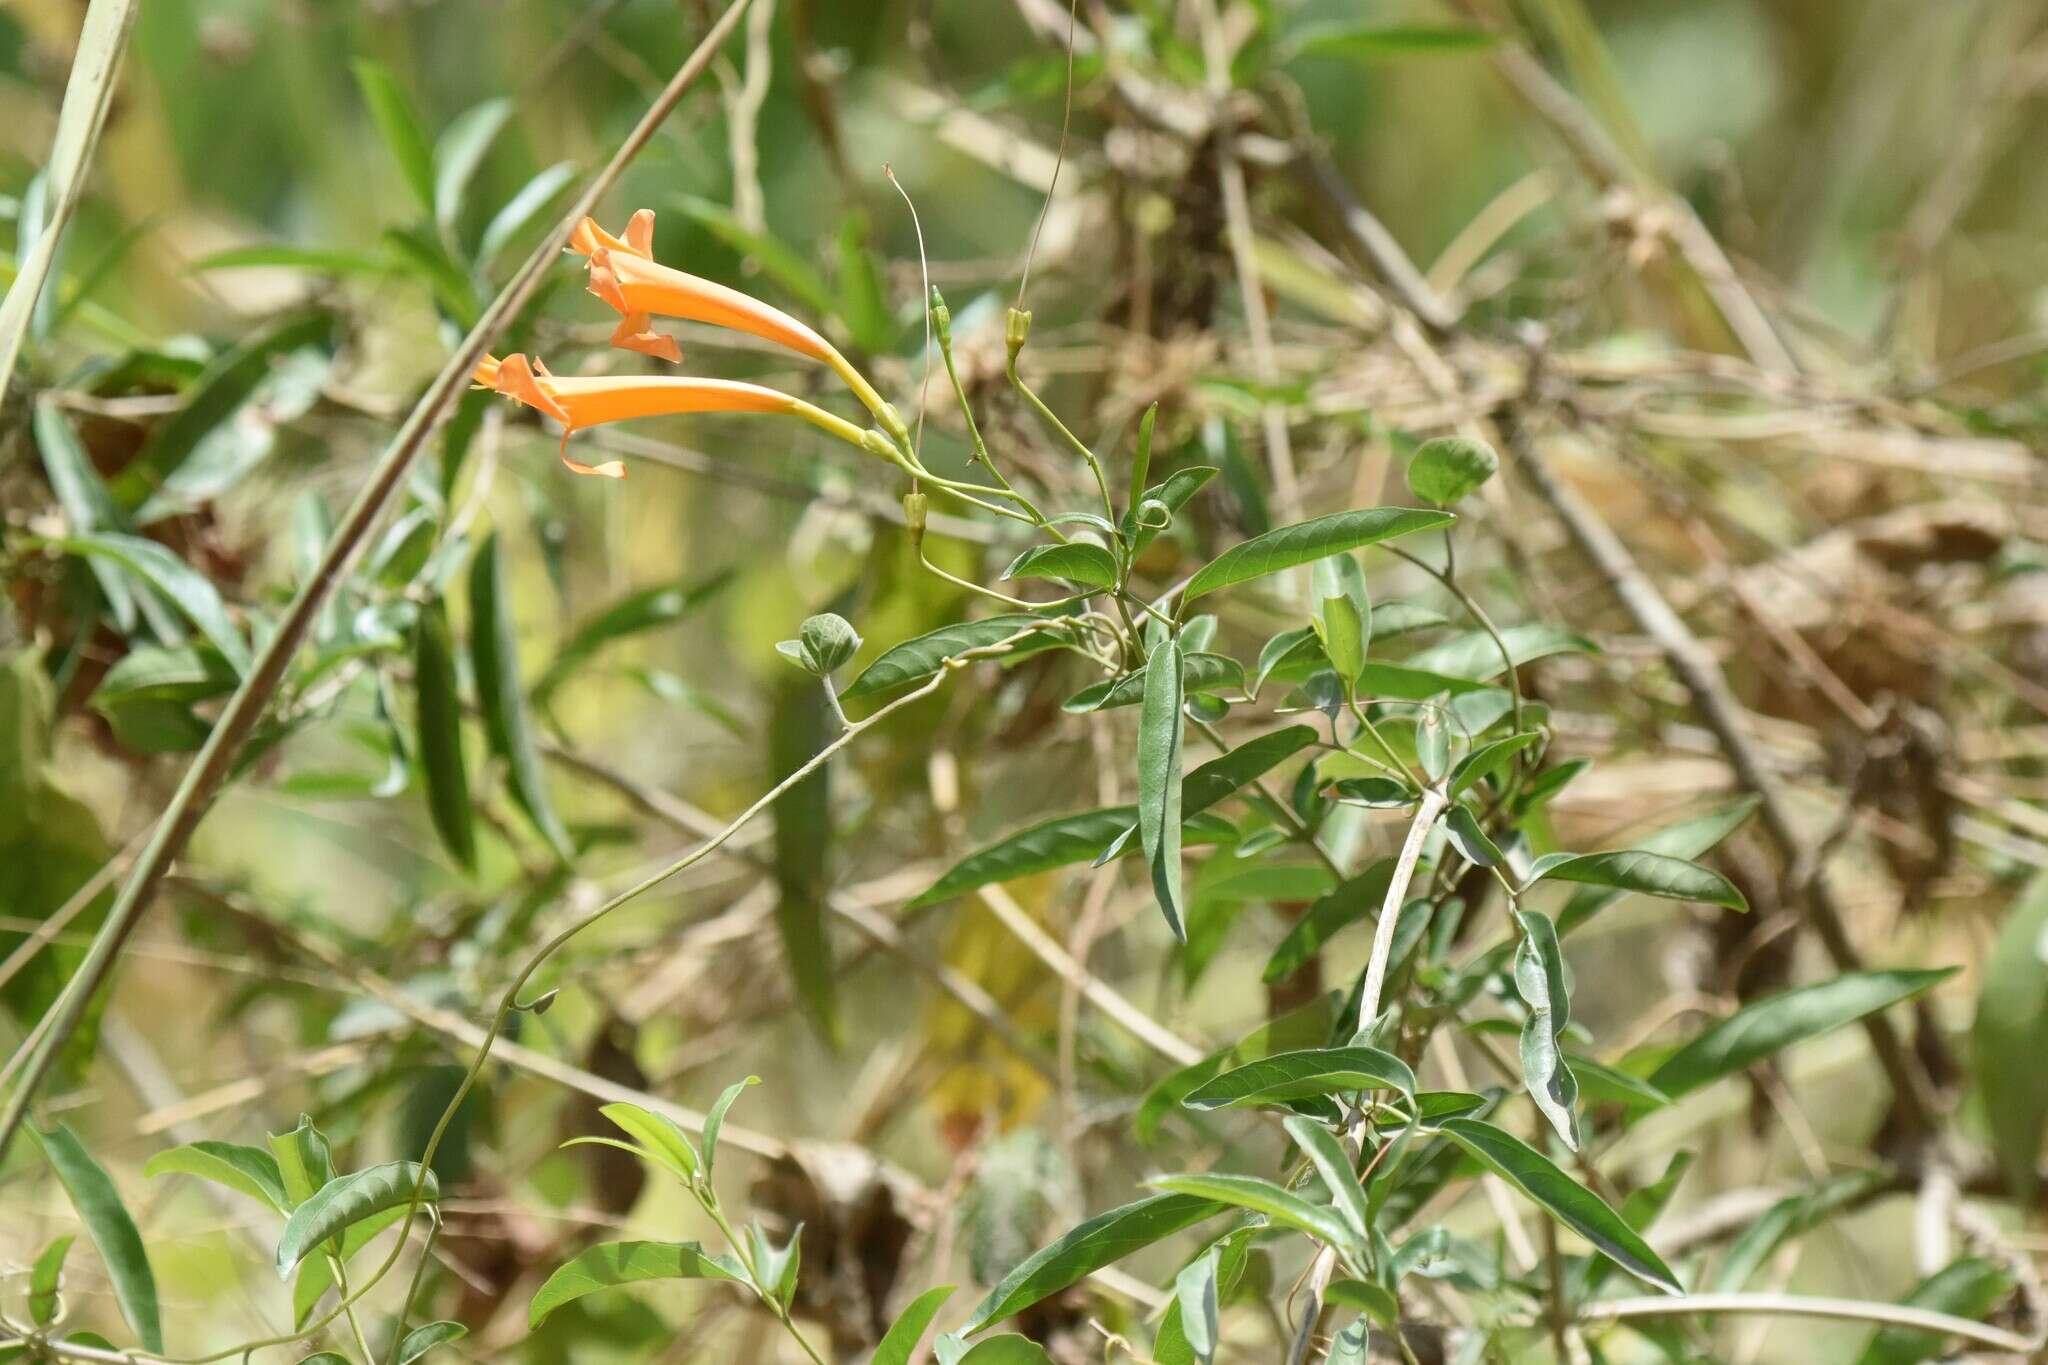 Image of Bignonia longiflora Cav.